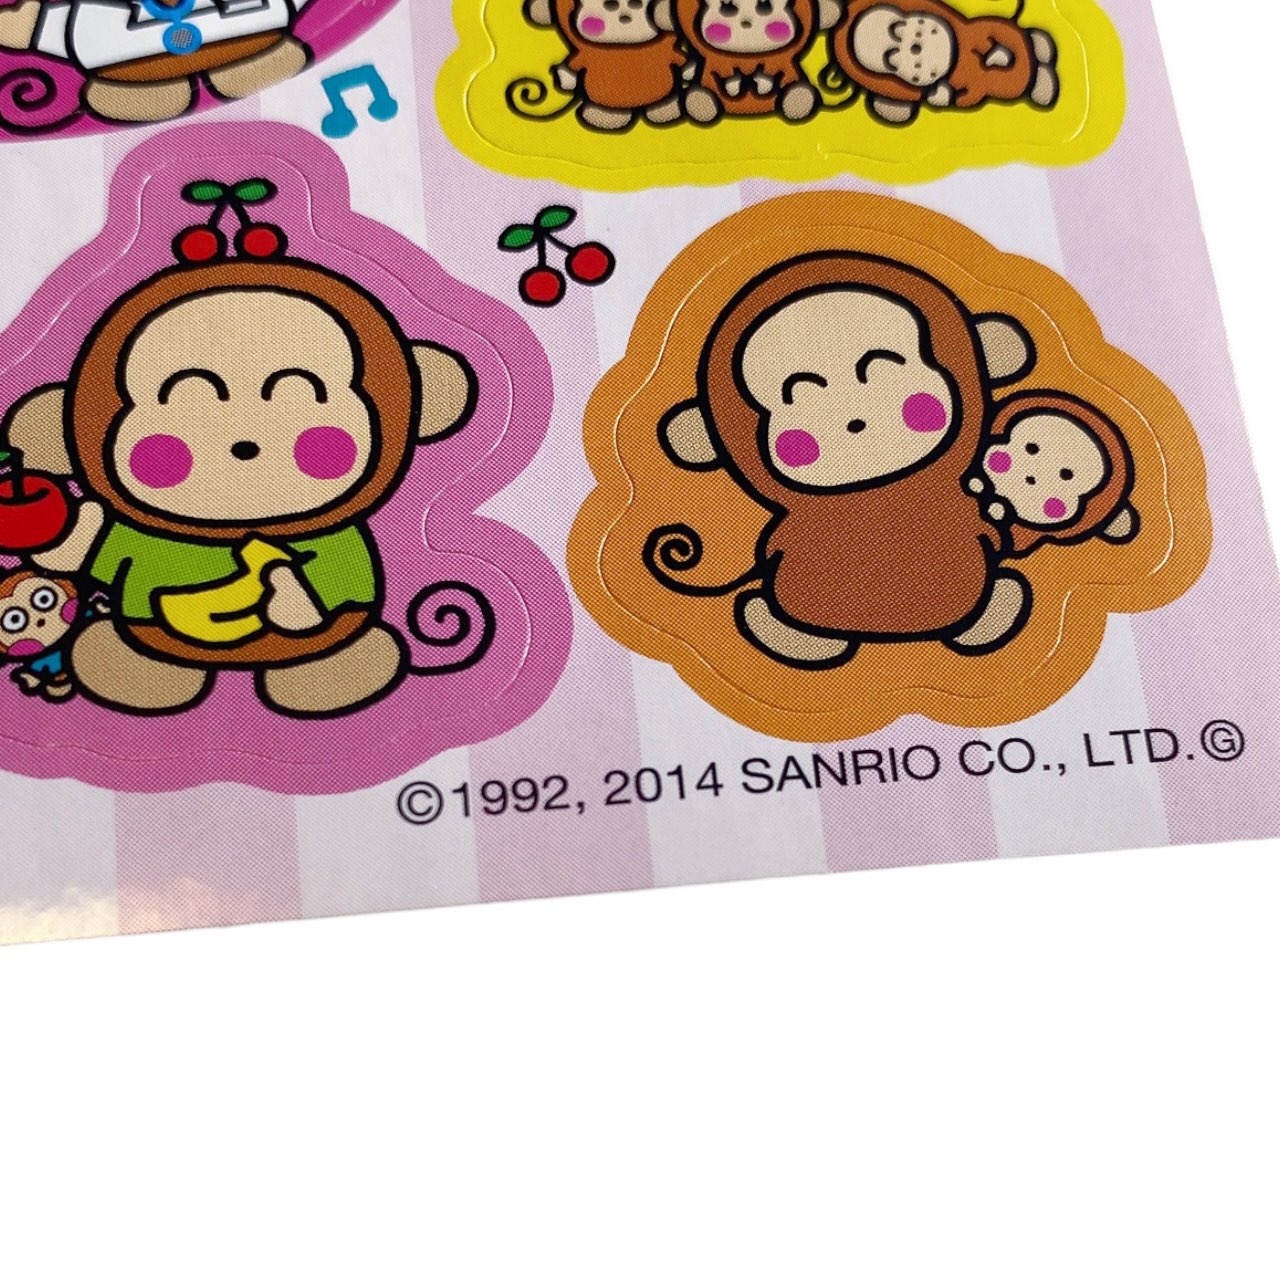 2014 Sanrio Monkichi Sticker Sheet